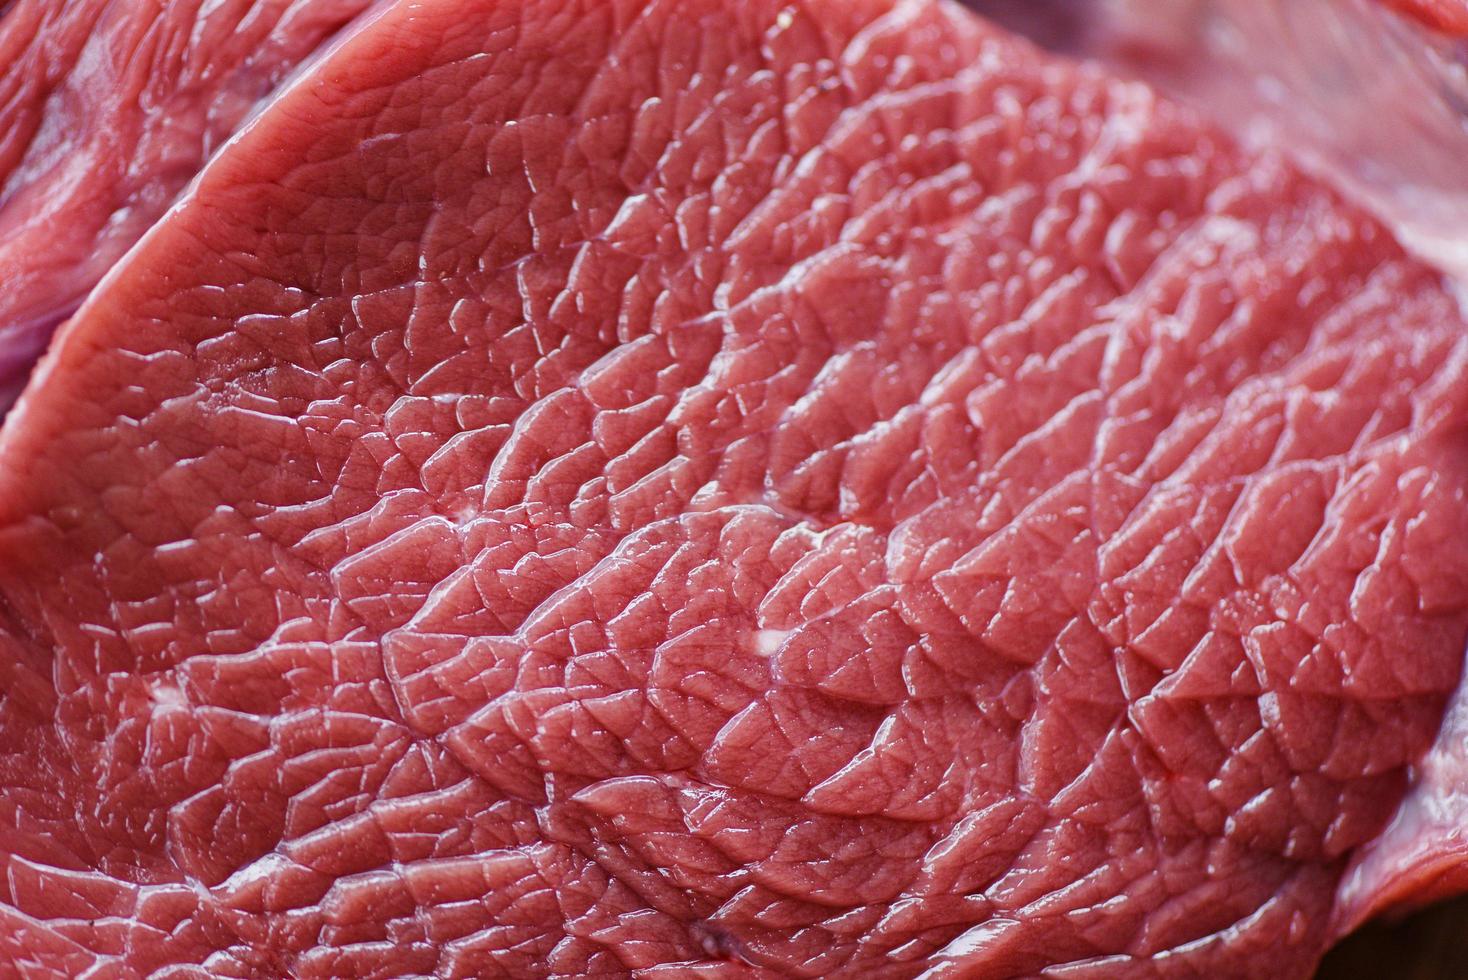 Proteína animal en rodajas de carne de res fresca: cierre de los detalles del fondo de textura de la carne de res cruda foto